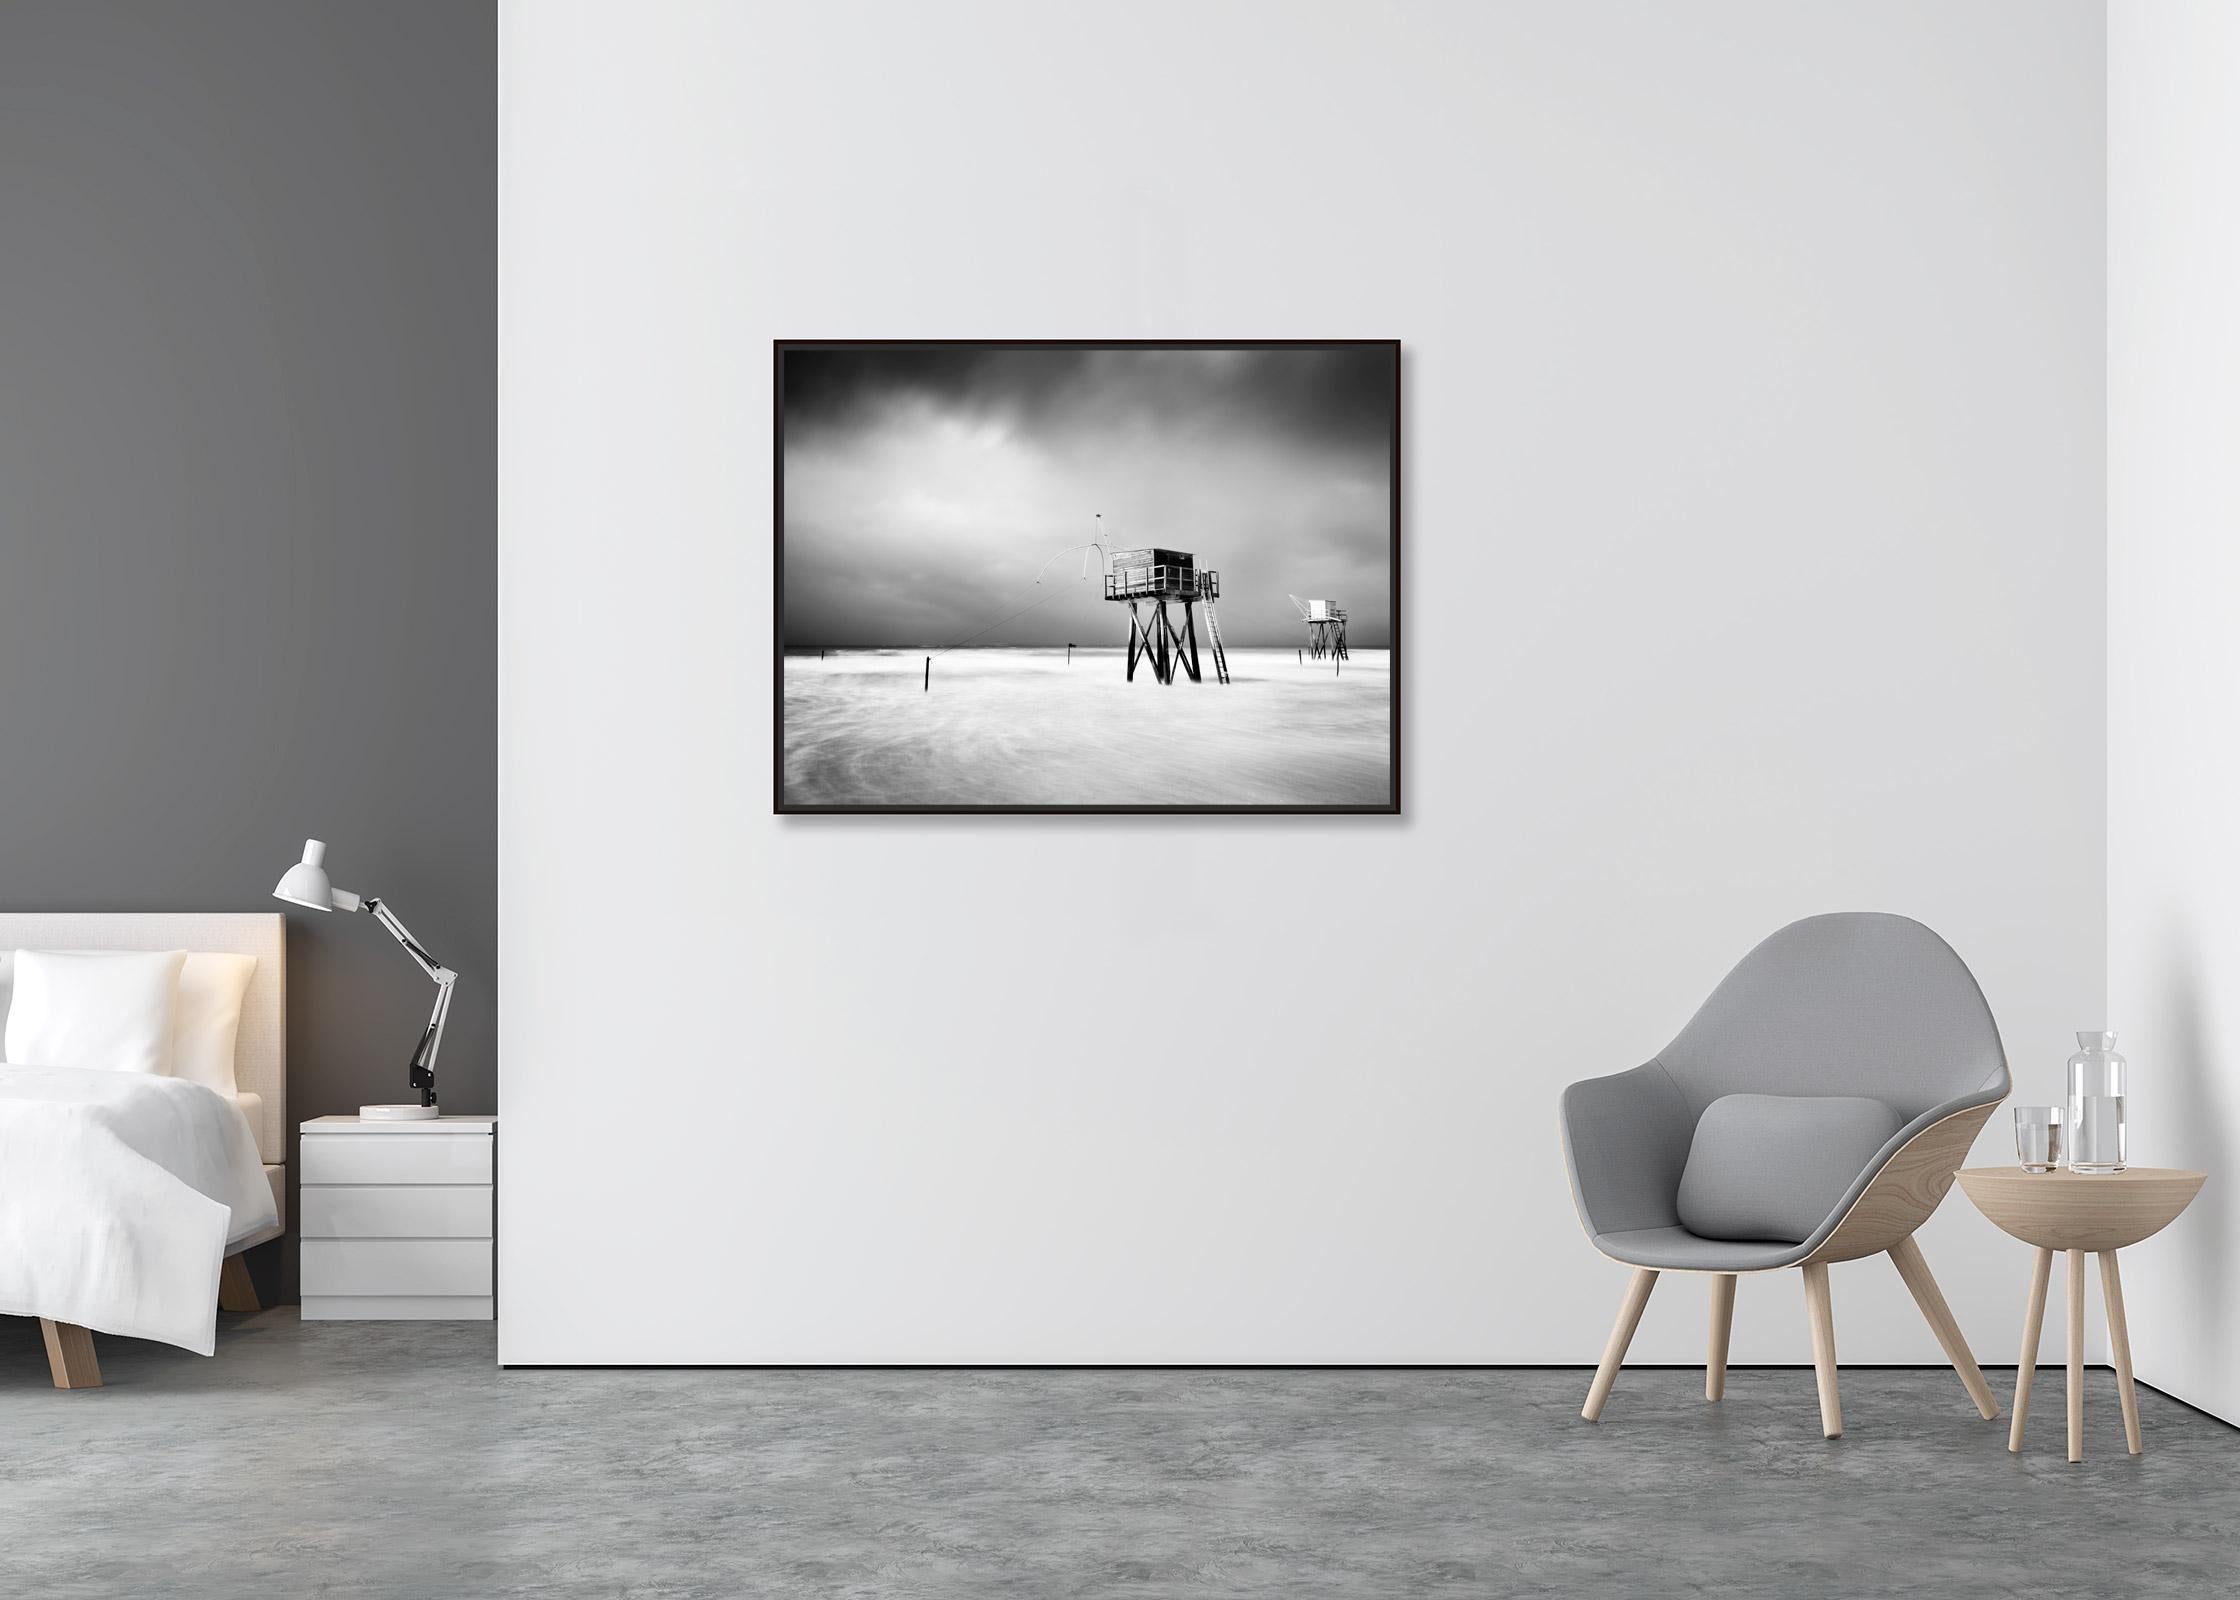 Fishing Hut On Stilts, Surf, Küste, Sturm, Schwarz-Weiß-Landschaftsfotografie (Zeitgenössisch), Photograph, von Gerald Berghammer